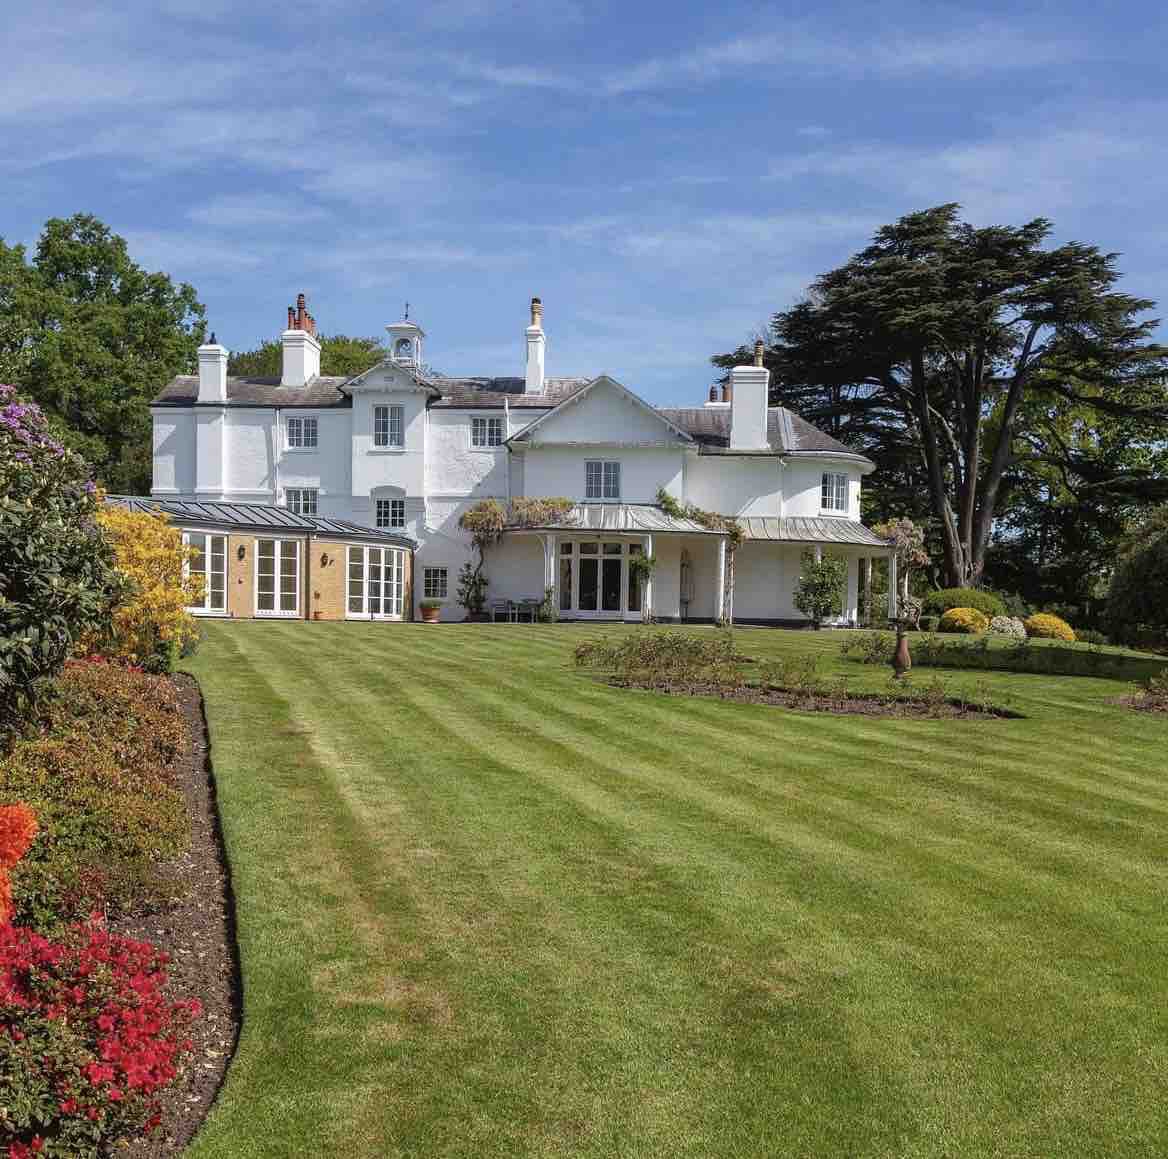 An exquisite 18th century estate